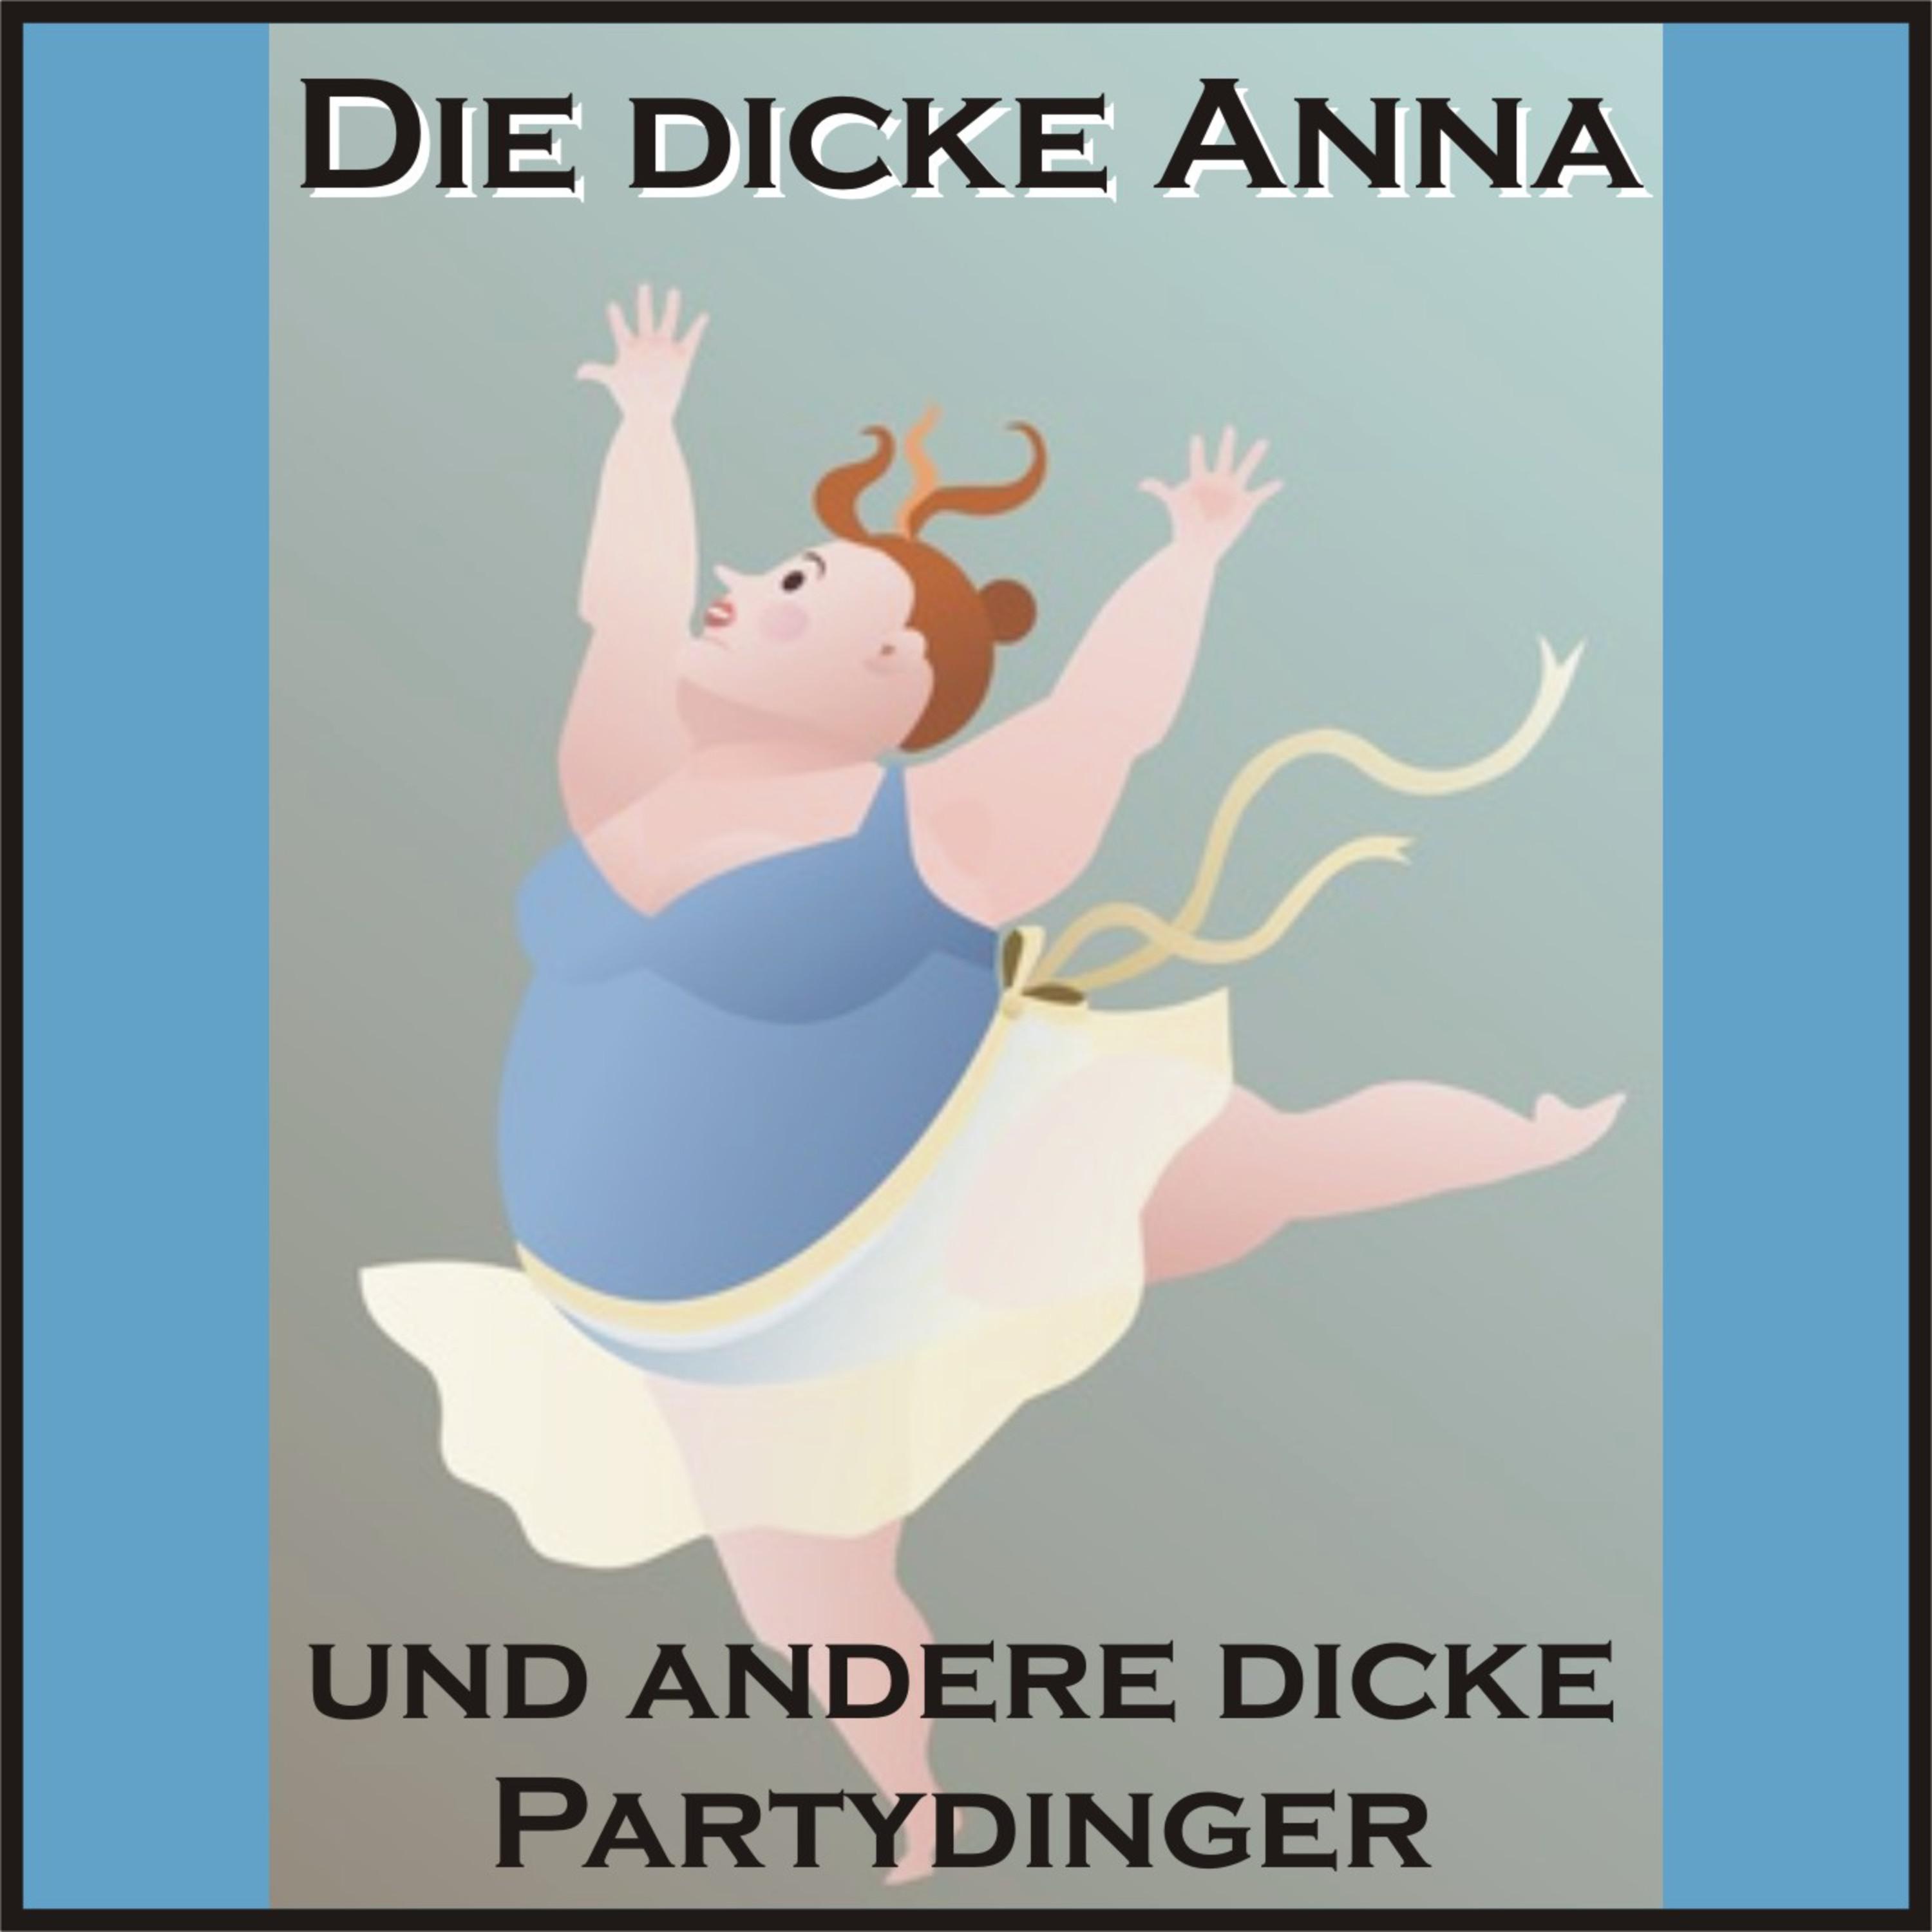 Die ***** Anna und andere ***** Partydinger